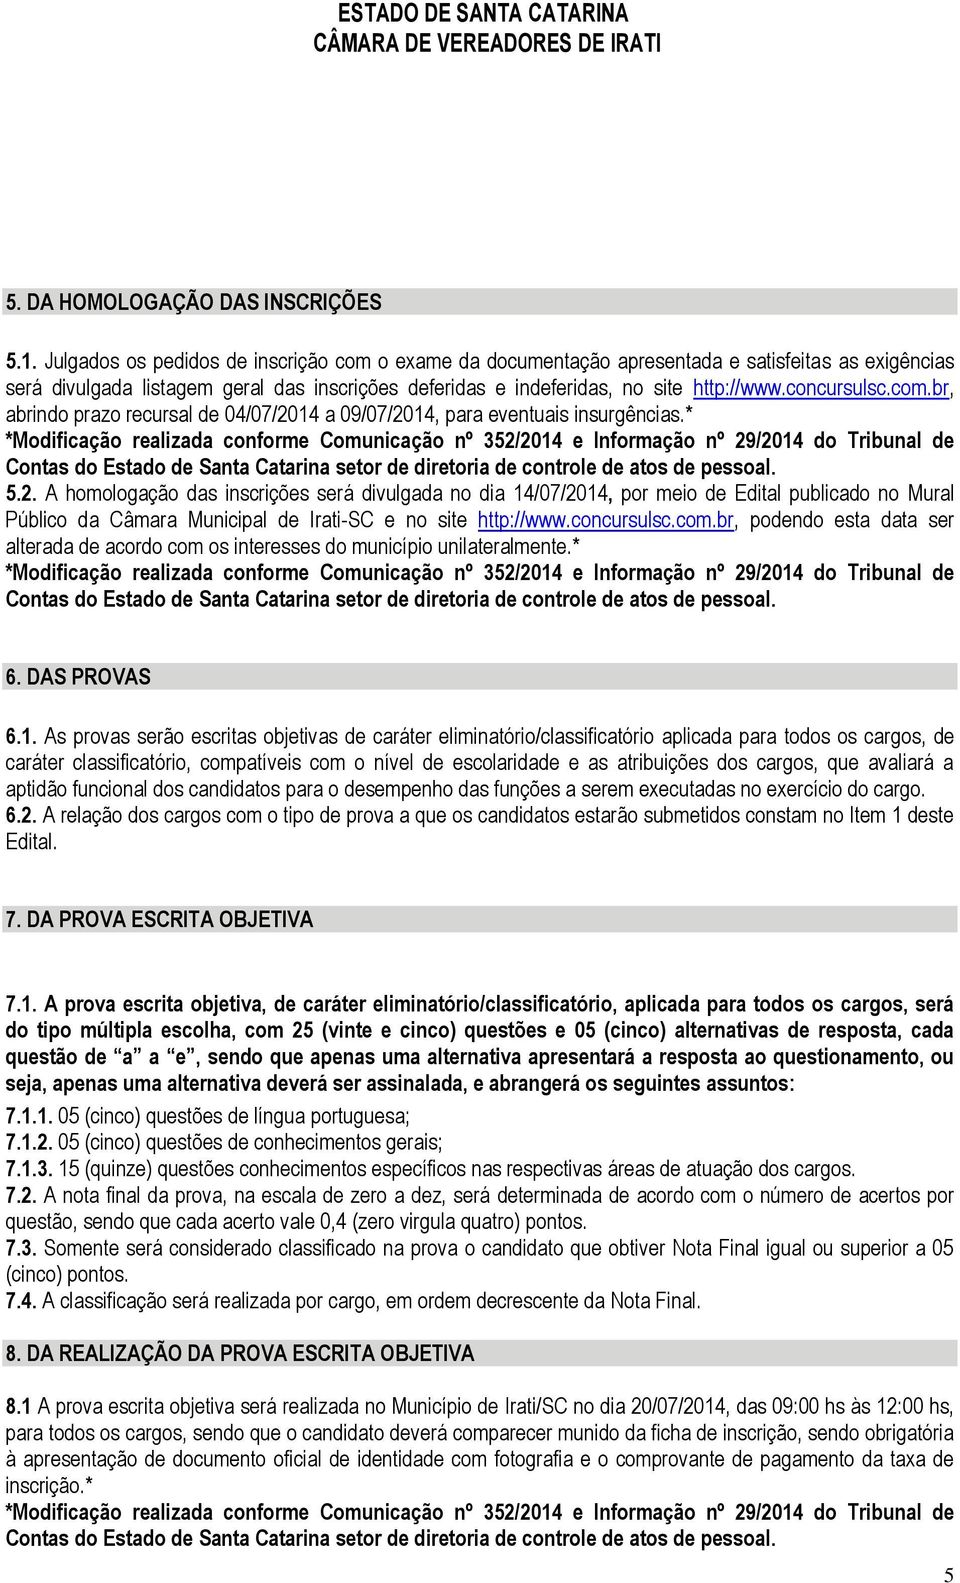 concursulsc.com.br, abrindo prazo recursal de 04/07/2014 a 09/07/2014, para eventuais insurgências.